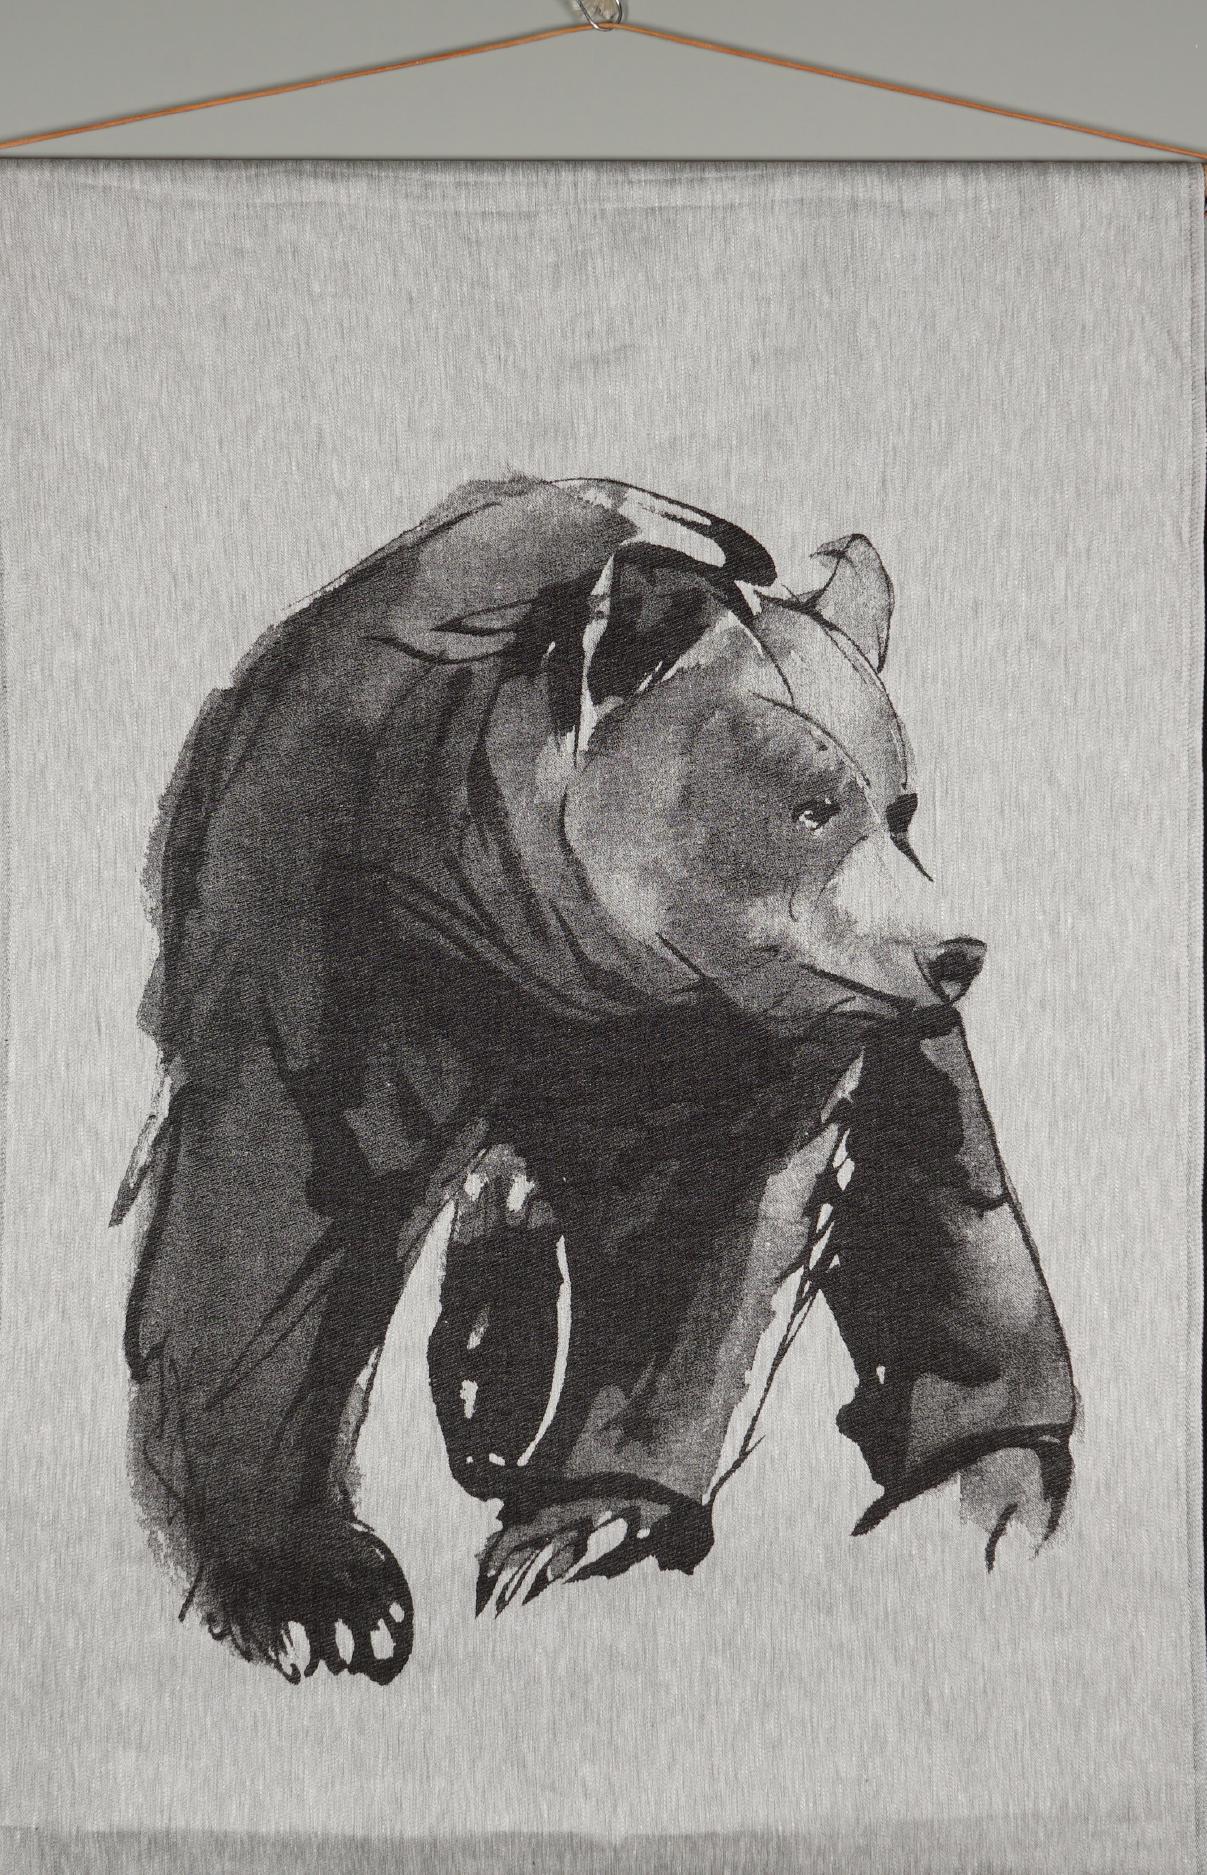 Kohde 95, Karhu Gobeliini, illustration 3550, Teemu Järvi, signeerattu a tergo